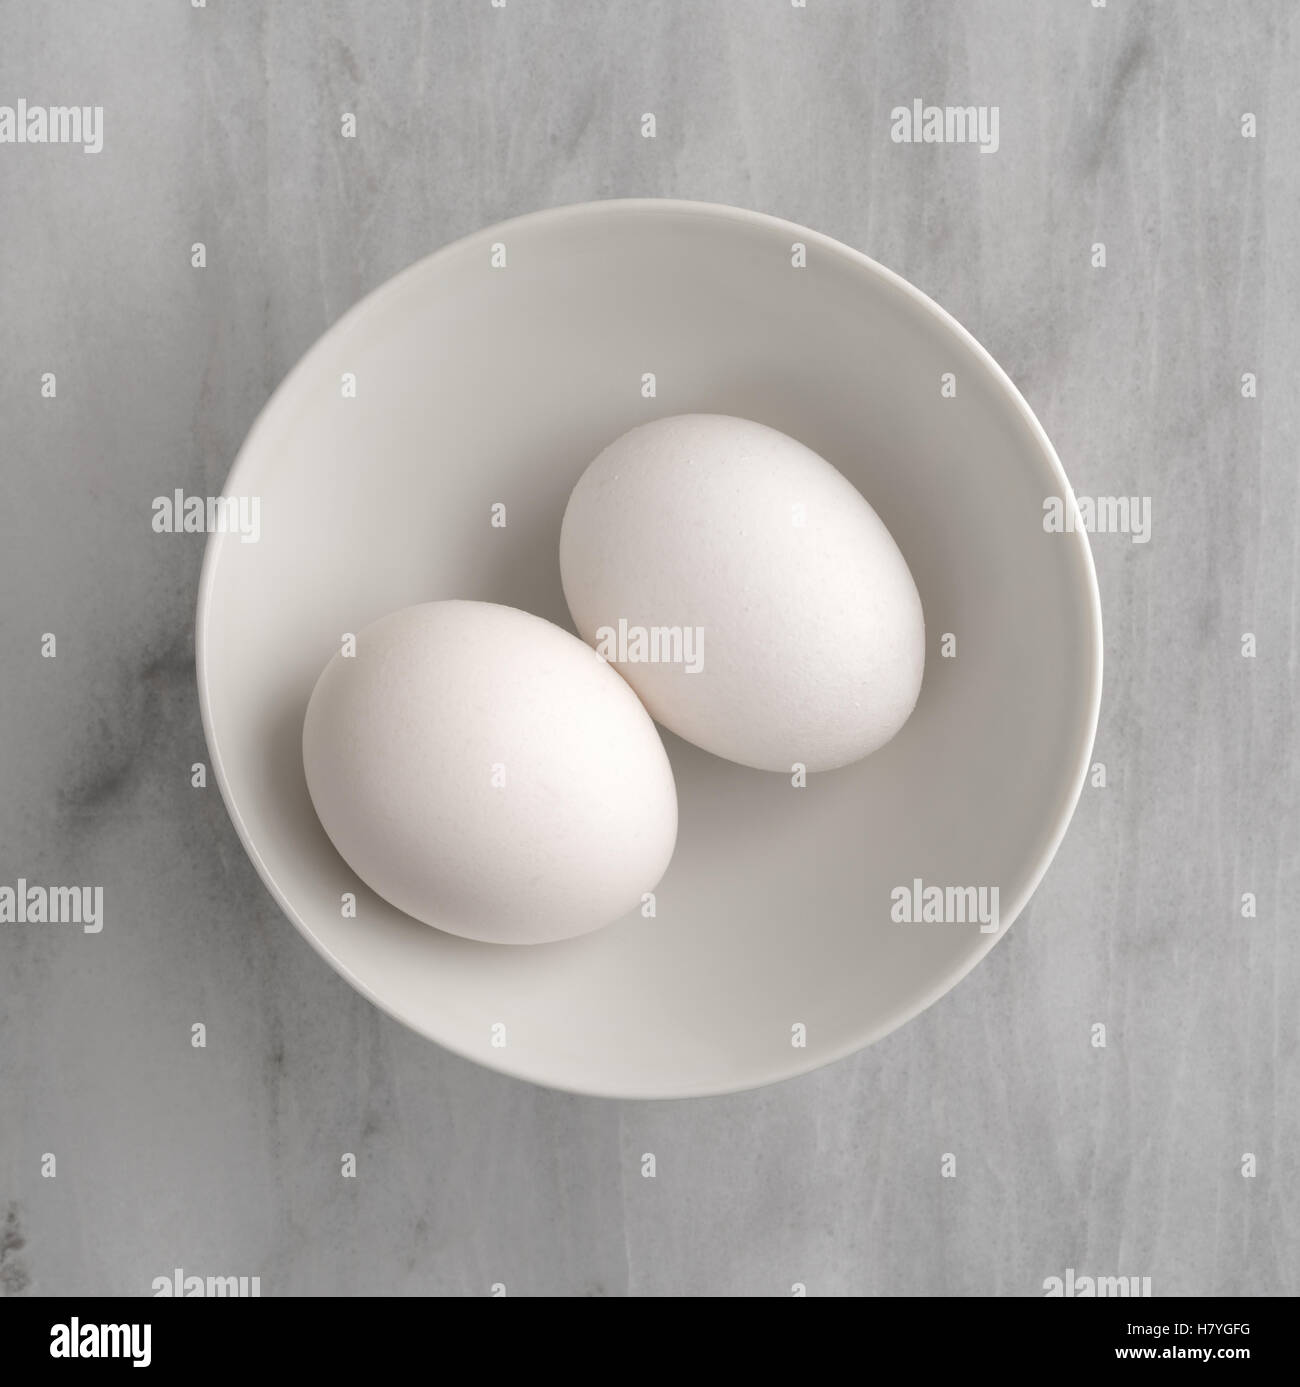 Vista superior de dos huevos en un recipiente blanco sobre una placa de corte de mármol gris. Foto de stock